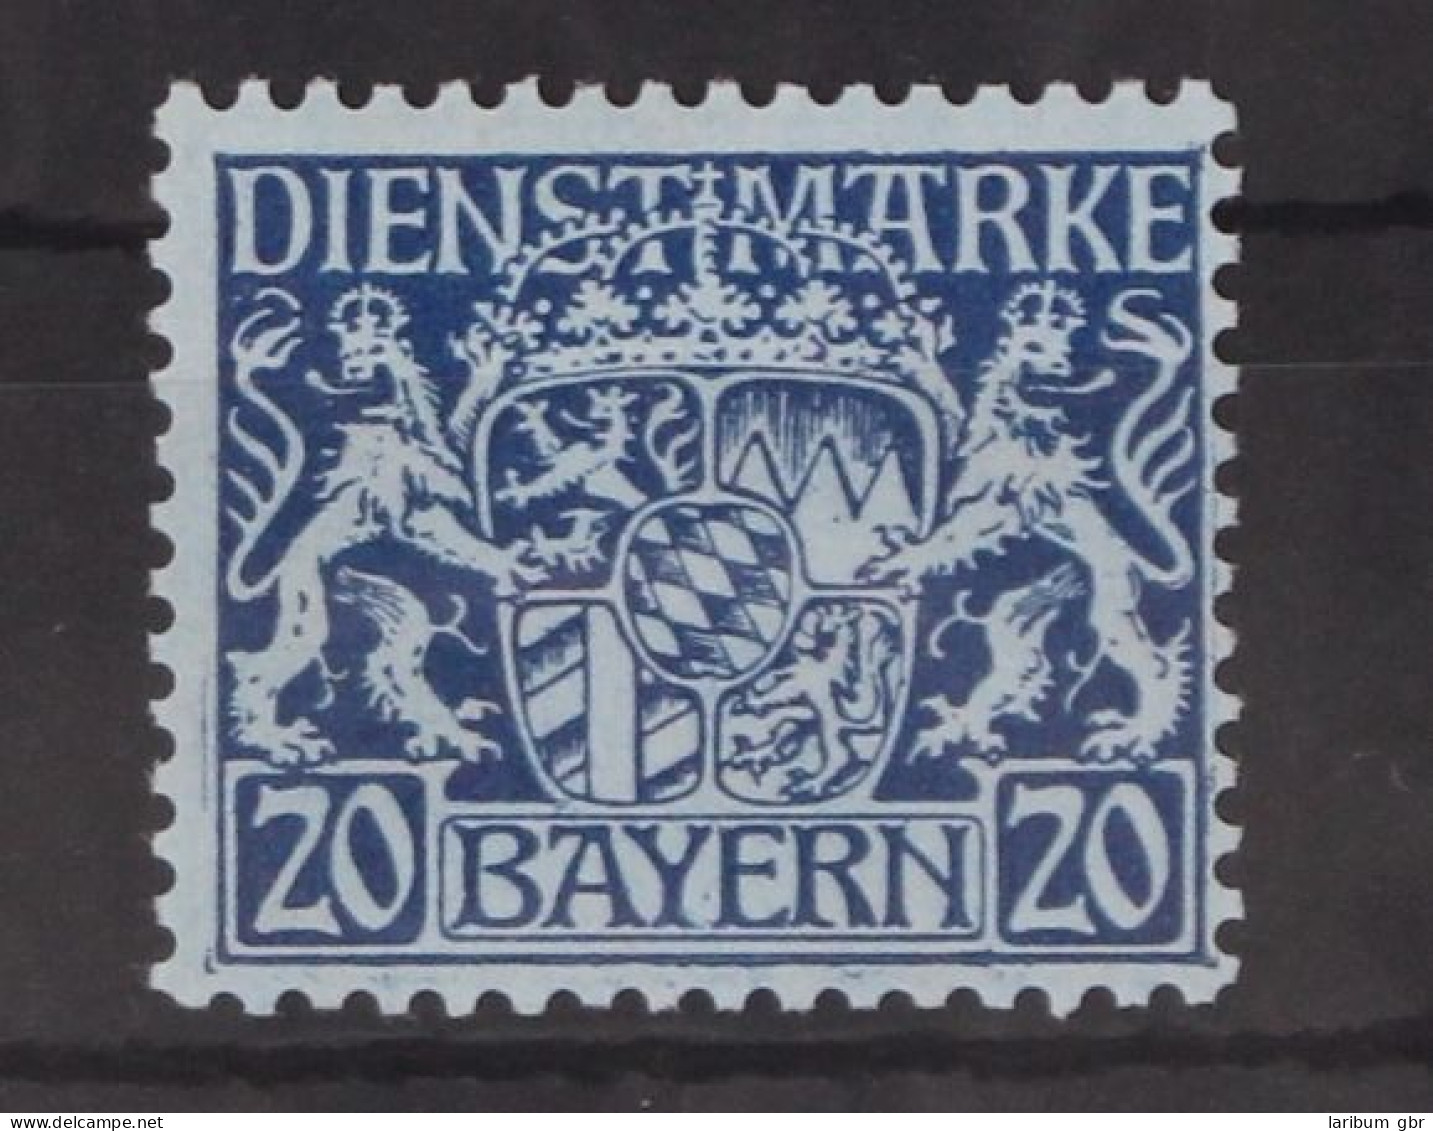 Bayern Dienstmarken 20 Postfrisch #GM098 - Mint